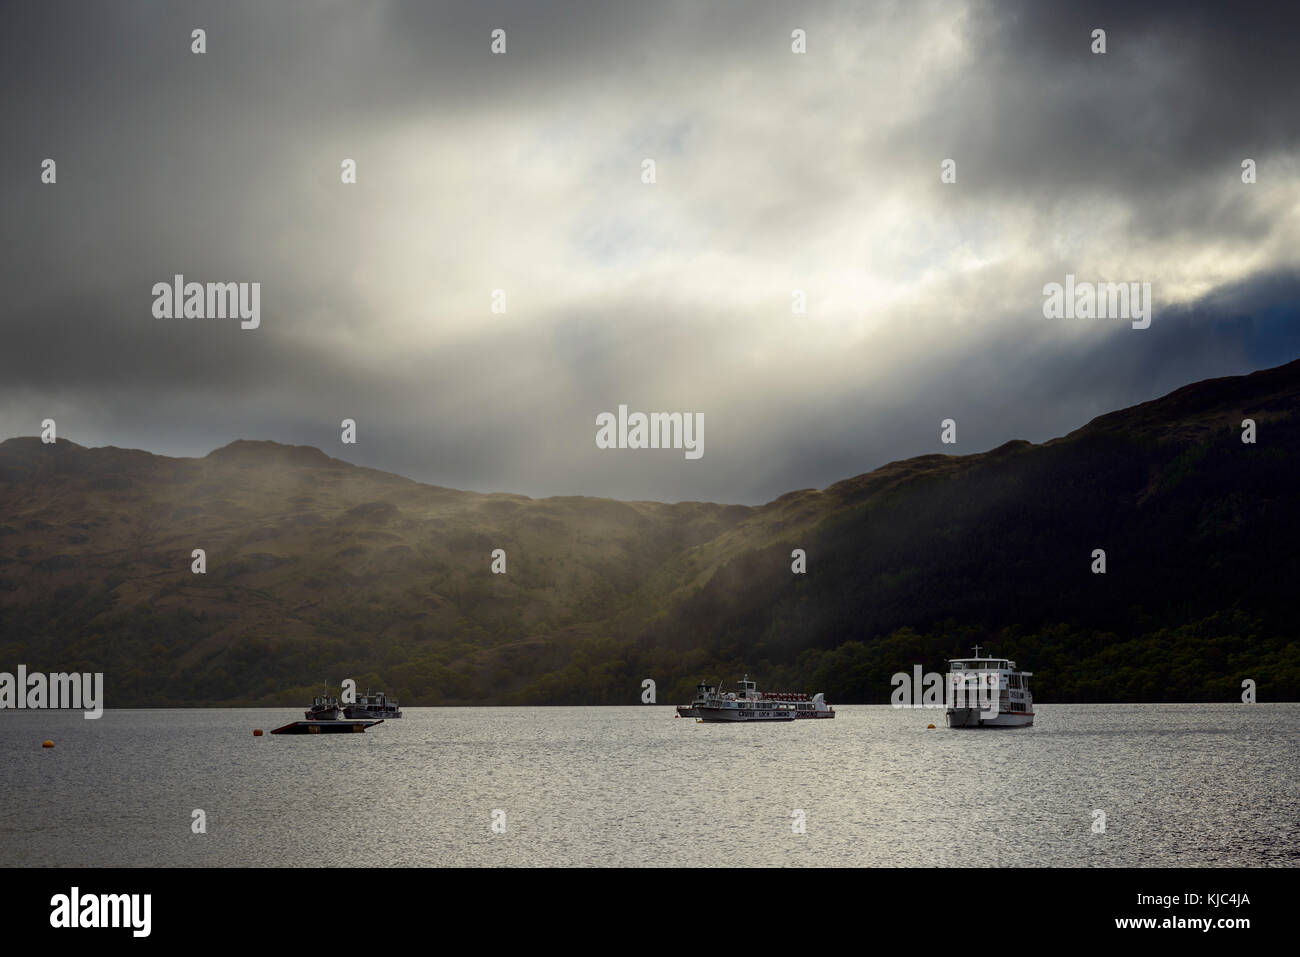 Bateaux de croisière sur le lac avec des nuages et de la lumière spectaculaires au Loch Lomond en Écosse, au Royaume-Uni Banque D'Images